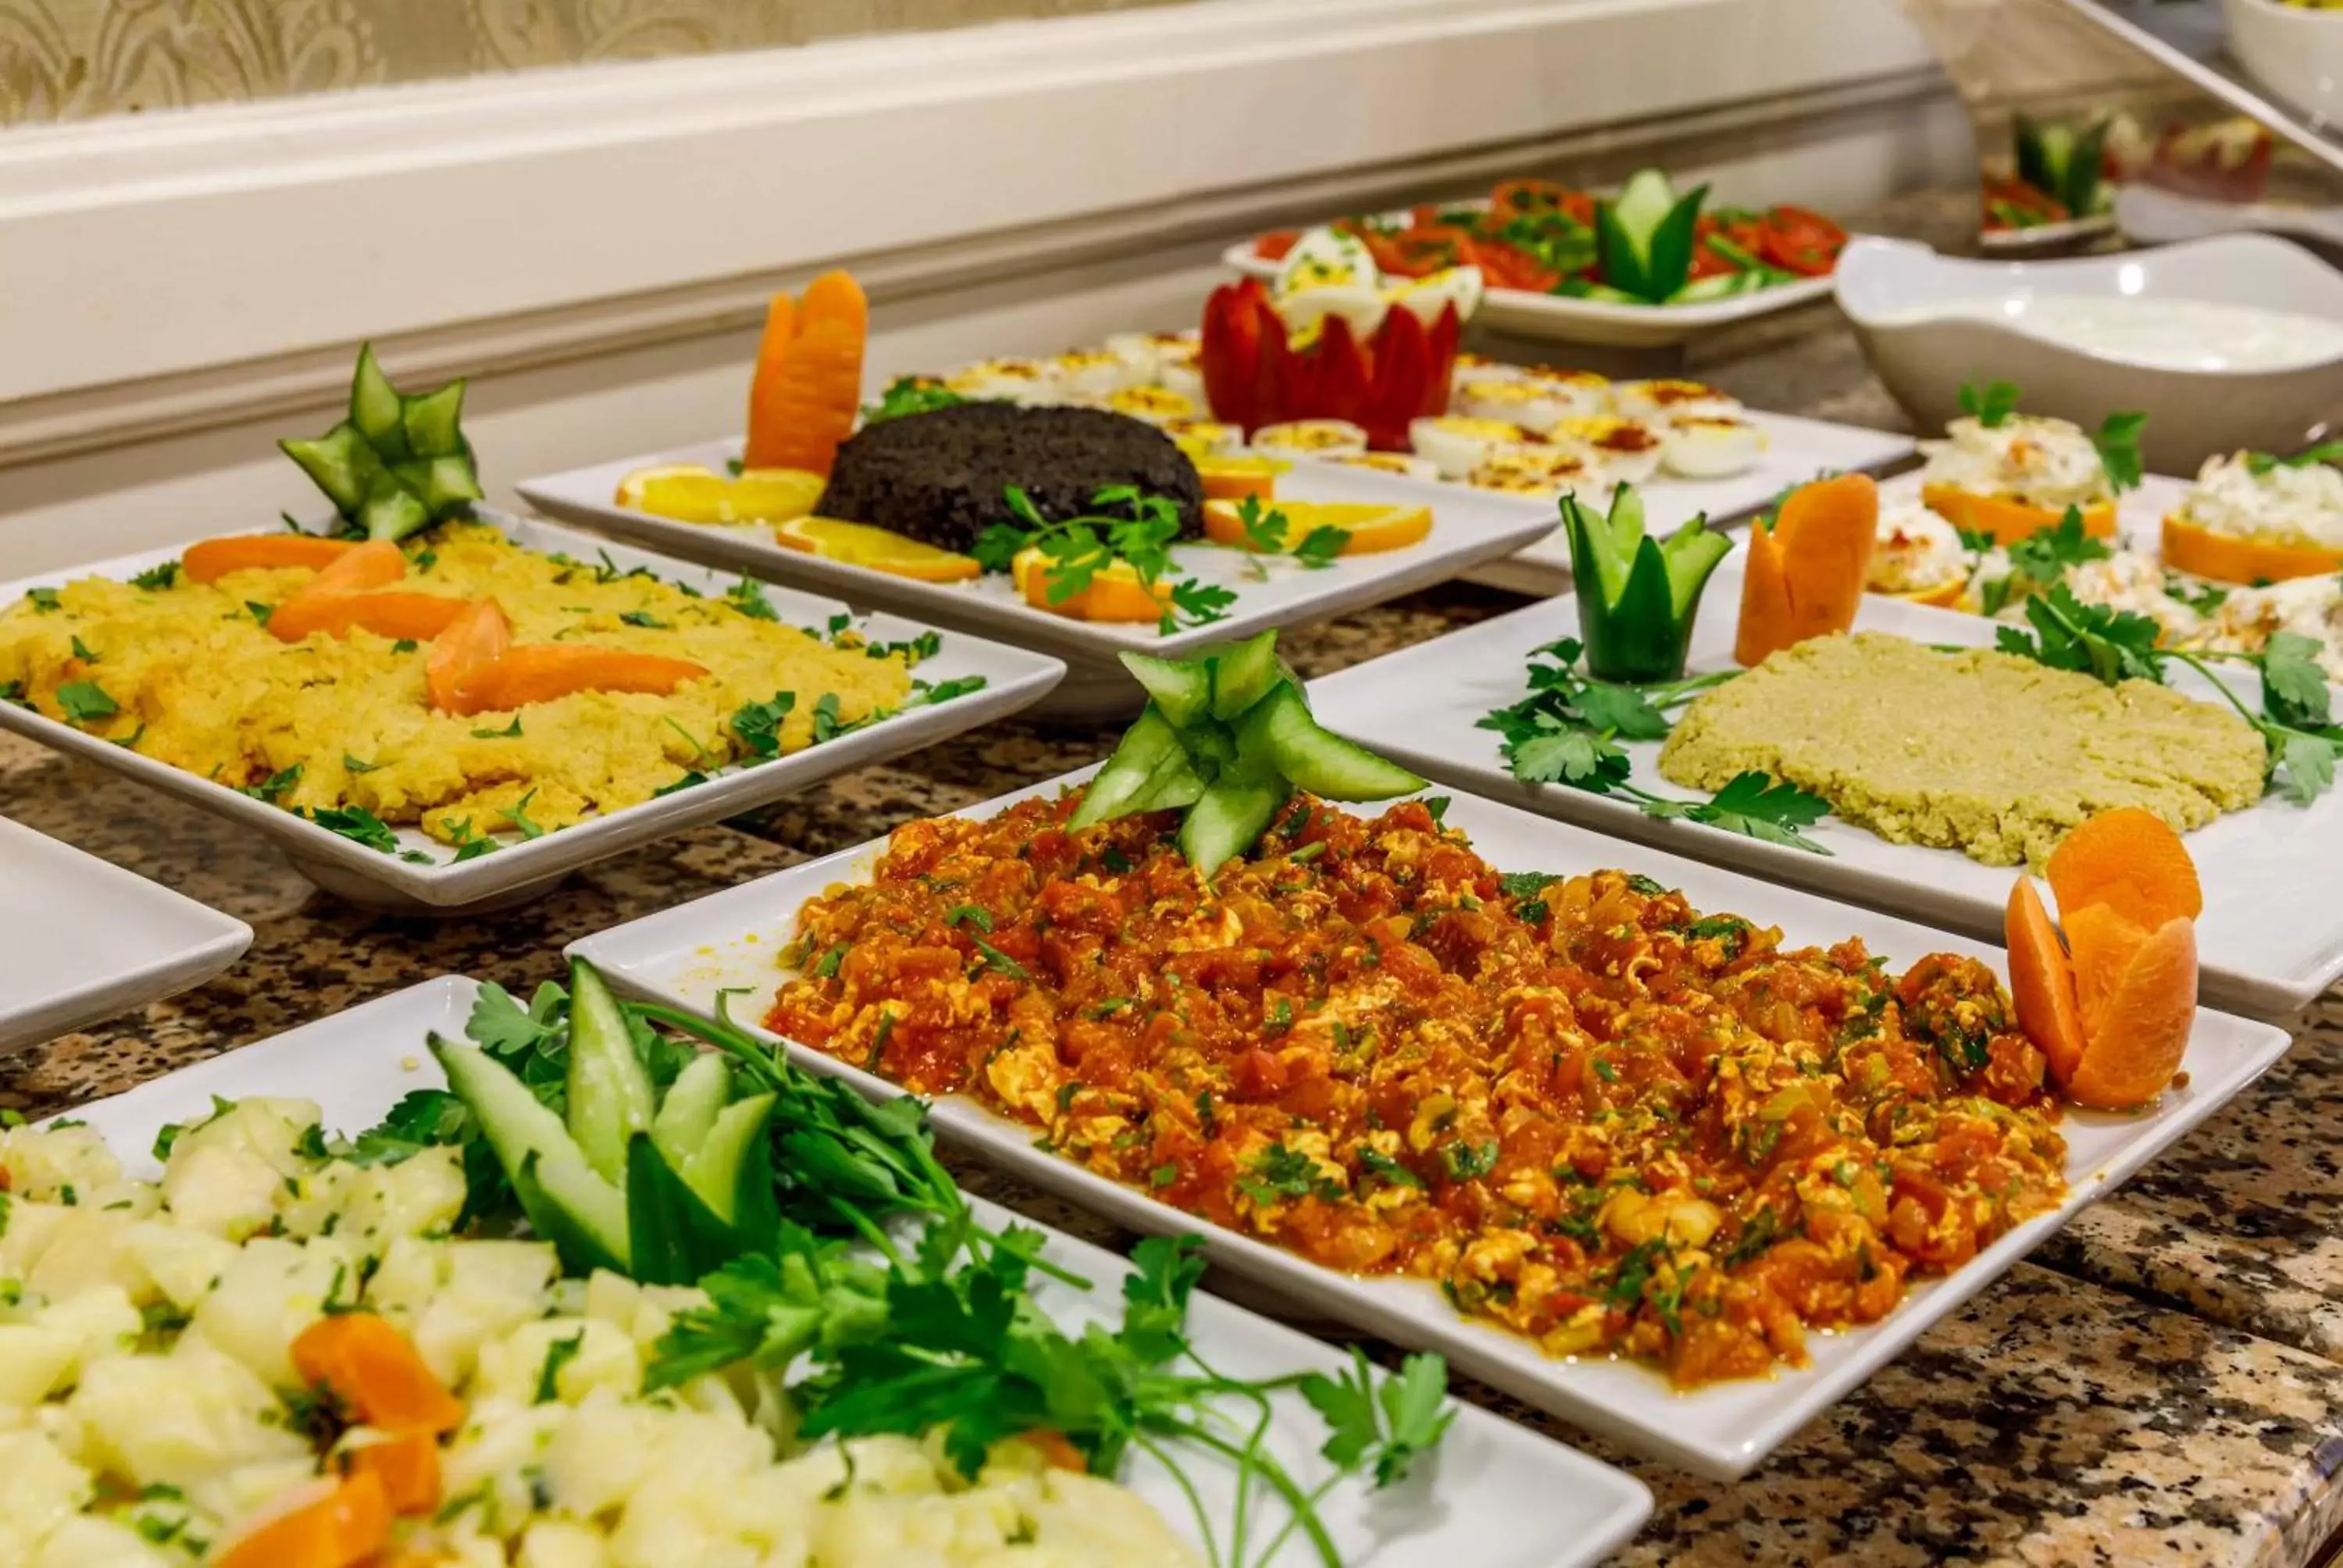 Buffet breakfast, Food in Golden Crown Hotel